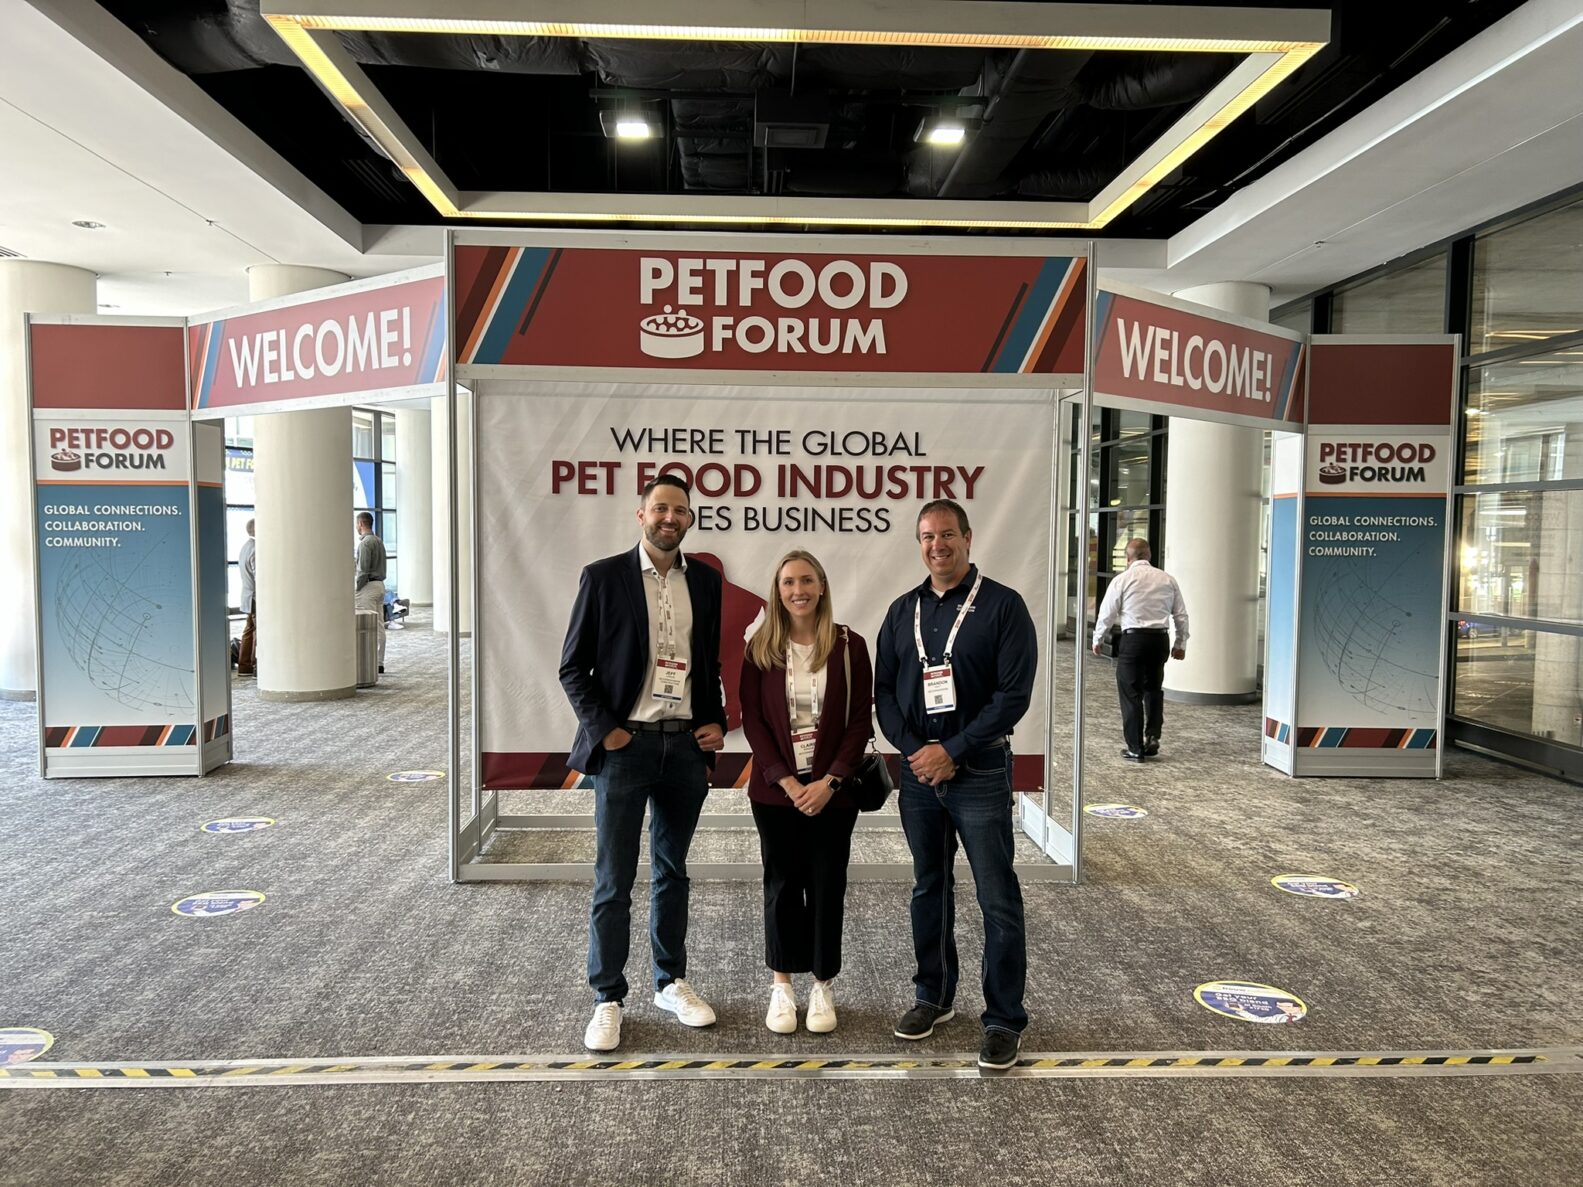 McCownGordon's manufacturing team at Petfood Forum